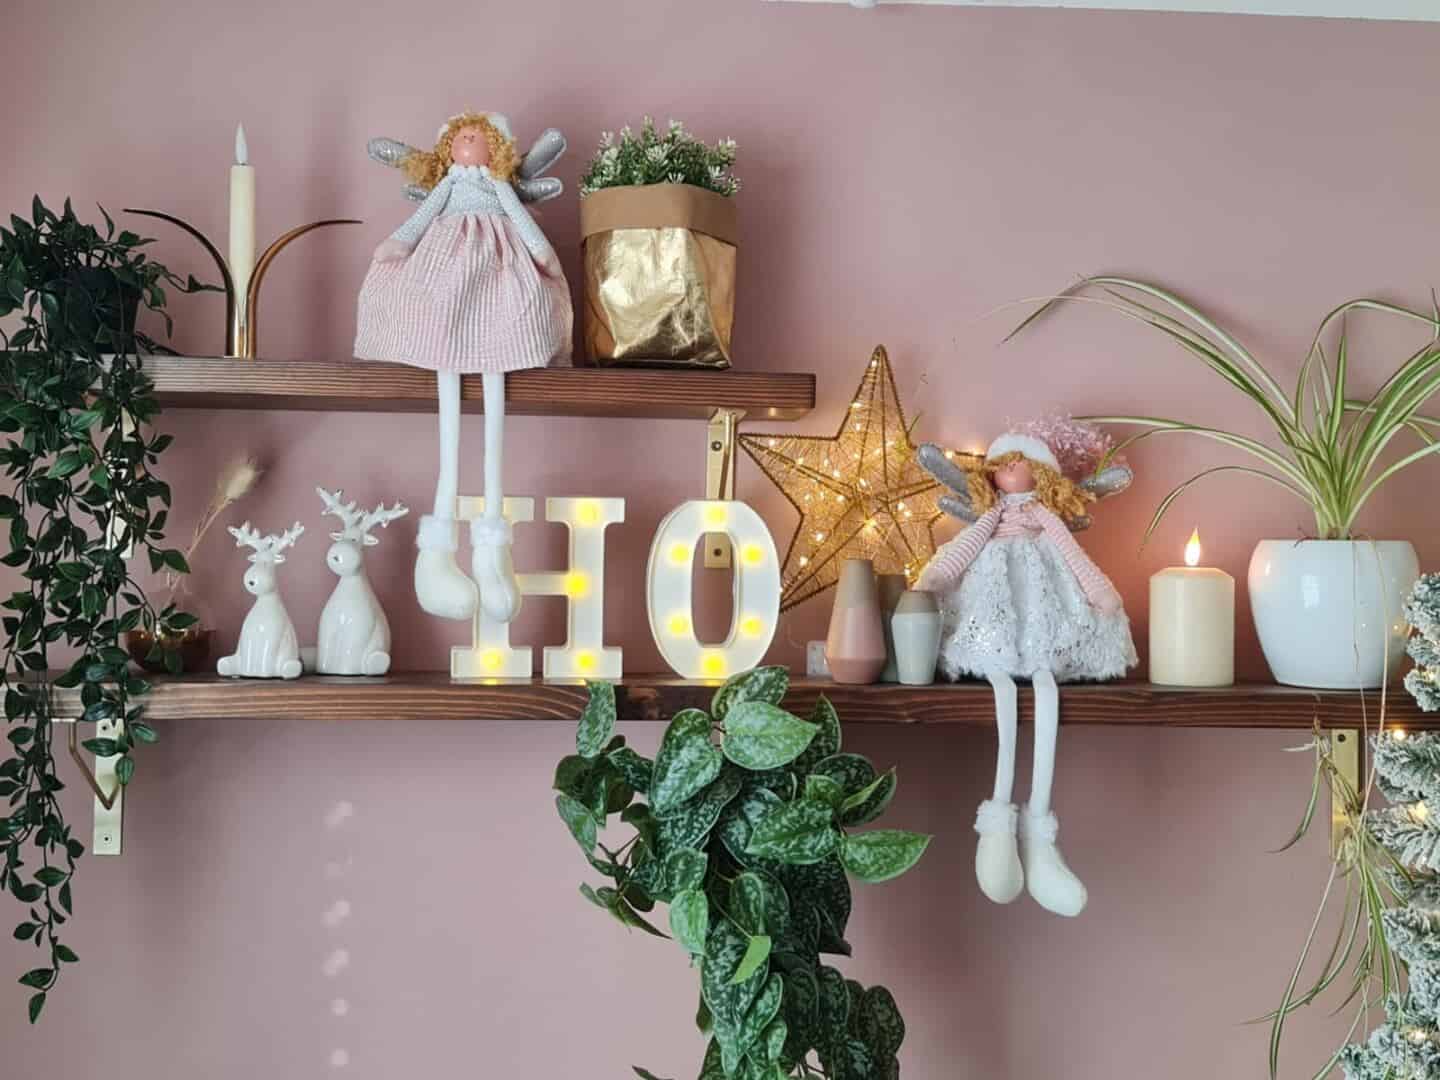 Dunkle Holzregale in einem rosa Heimbüro, das mit Weihnachtsschmuck und Kerzen verehrt wird